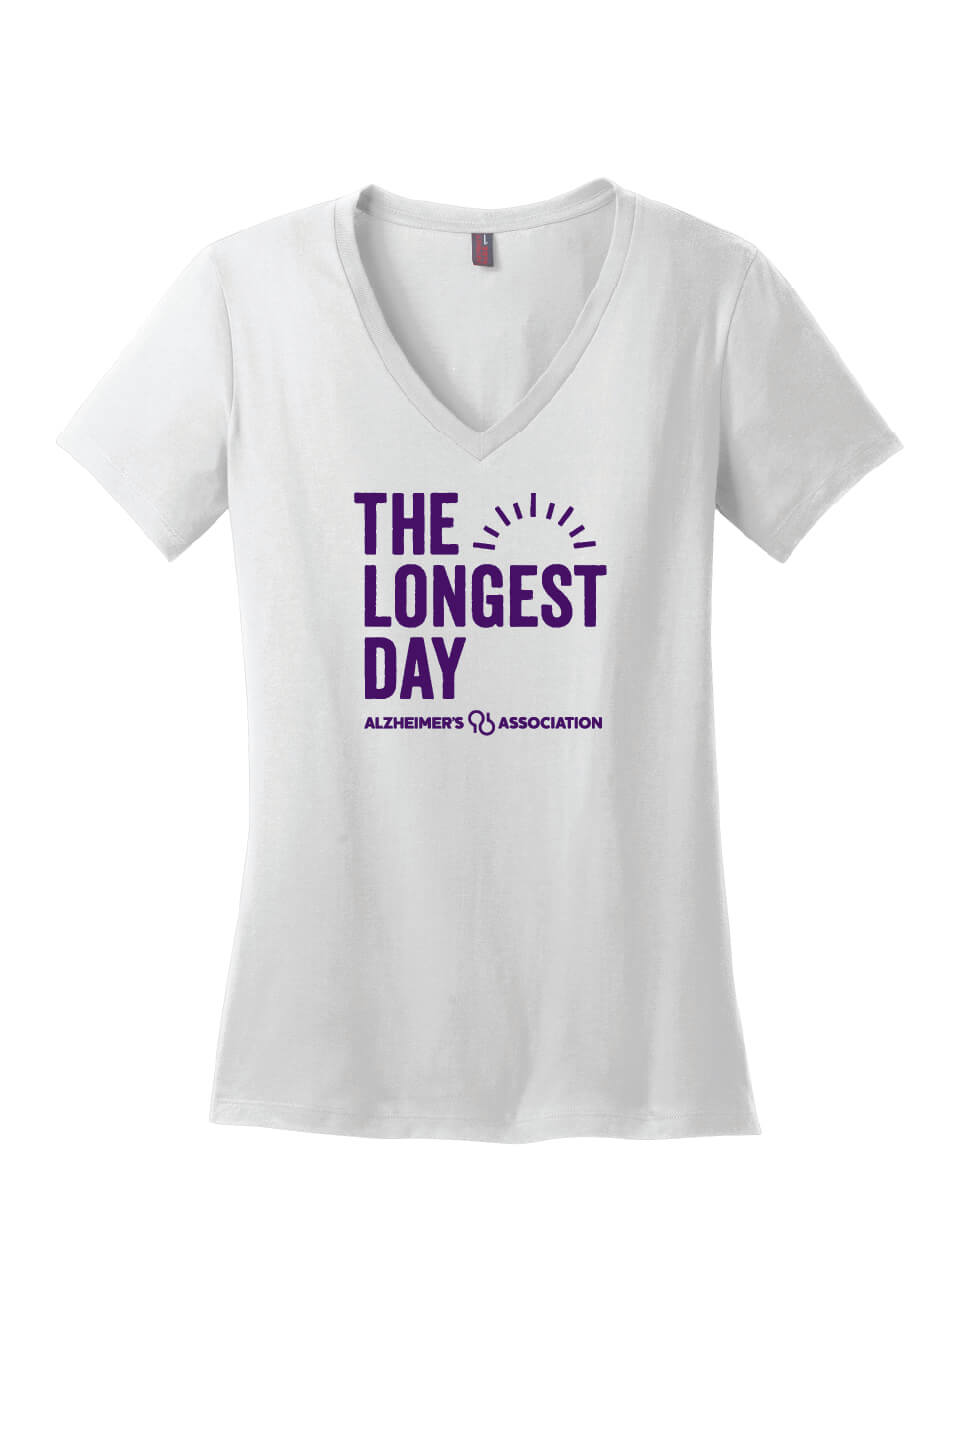 The Longest Day Ladies V-Neck Short Sleeve T-Shirt white vertical design